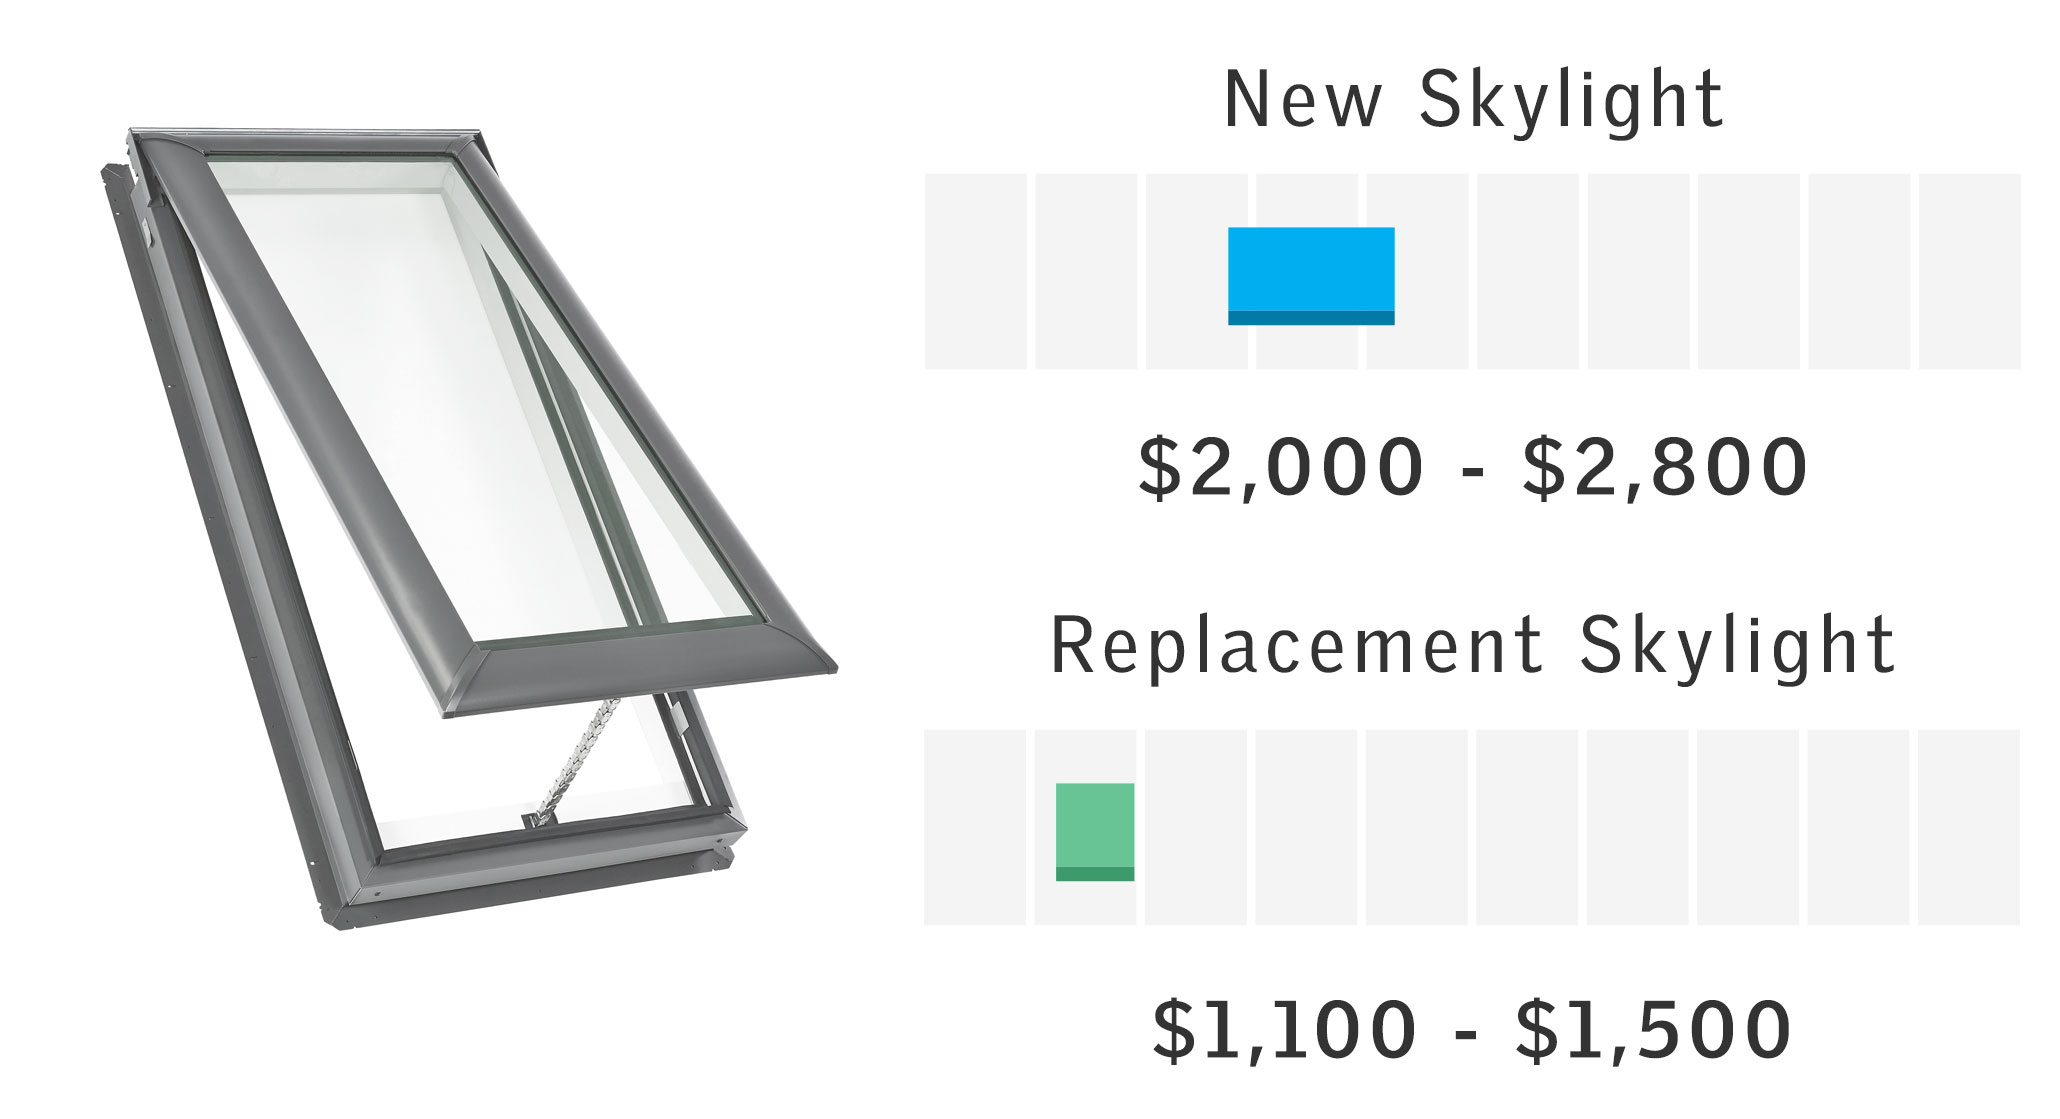 VELUX Price Ranges for Single Skylight Install